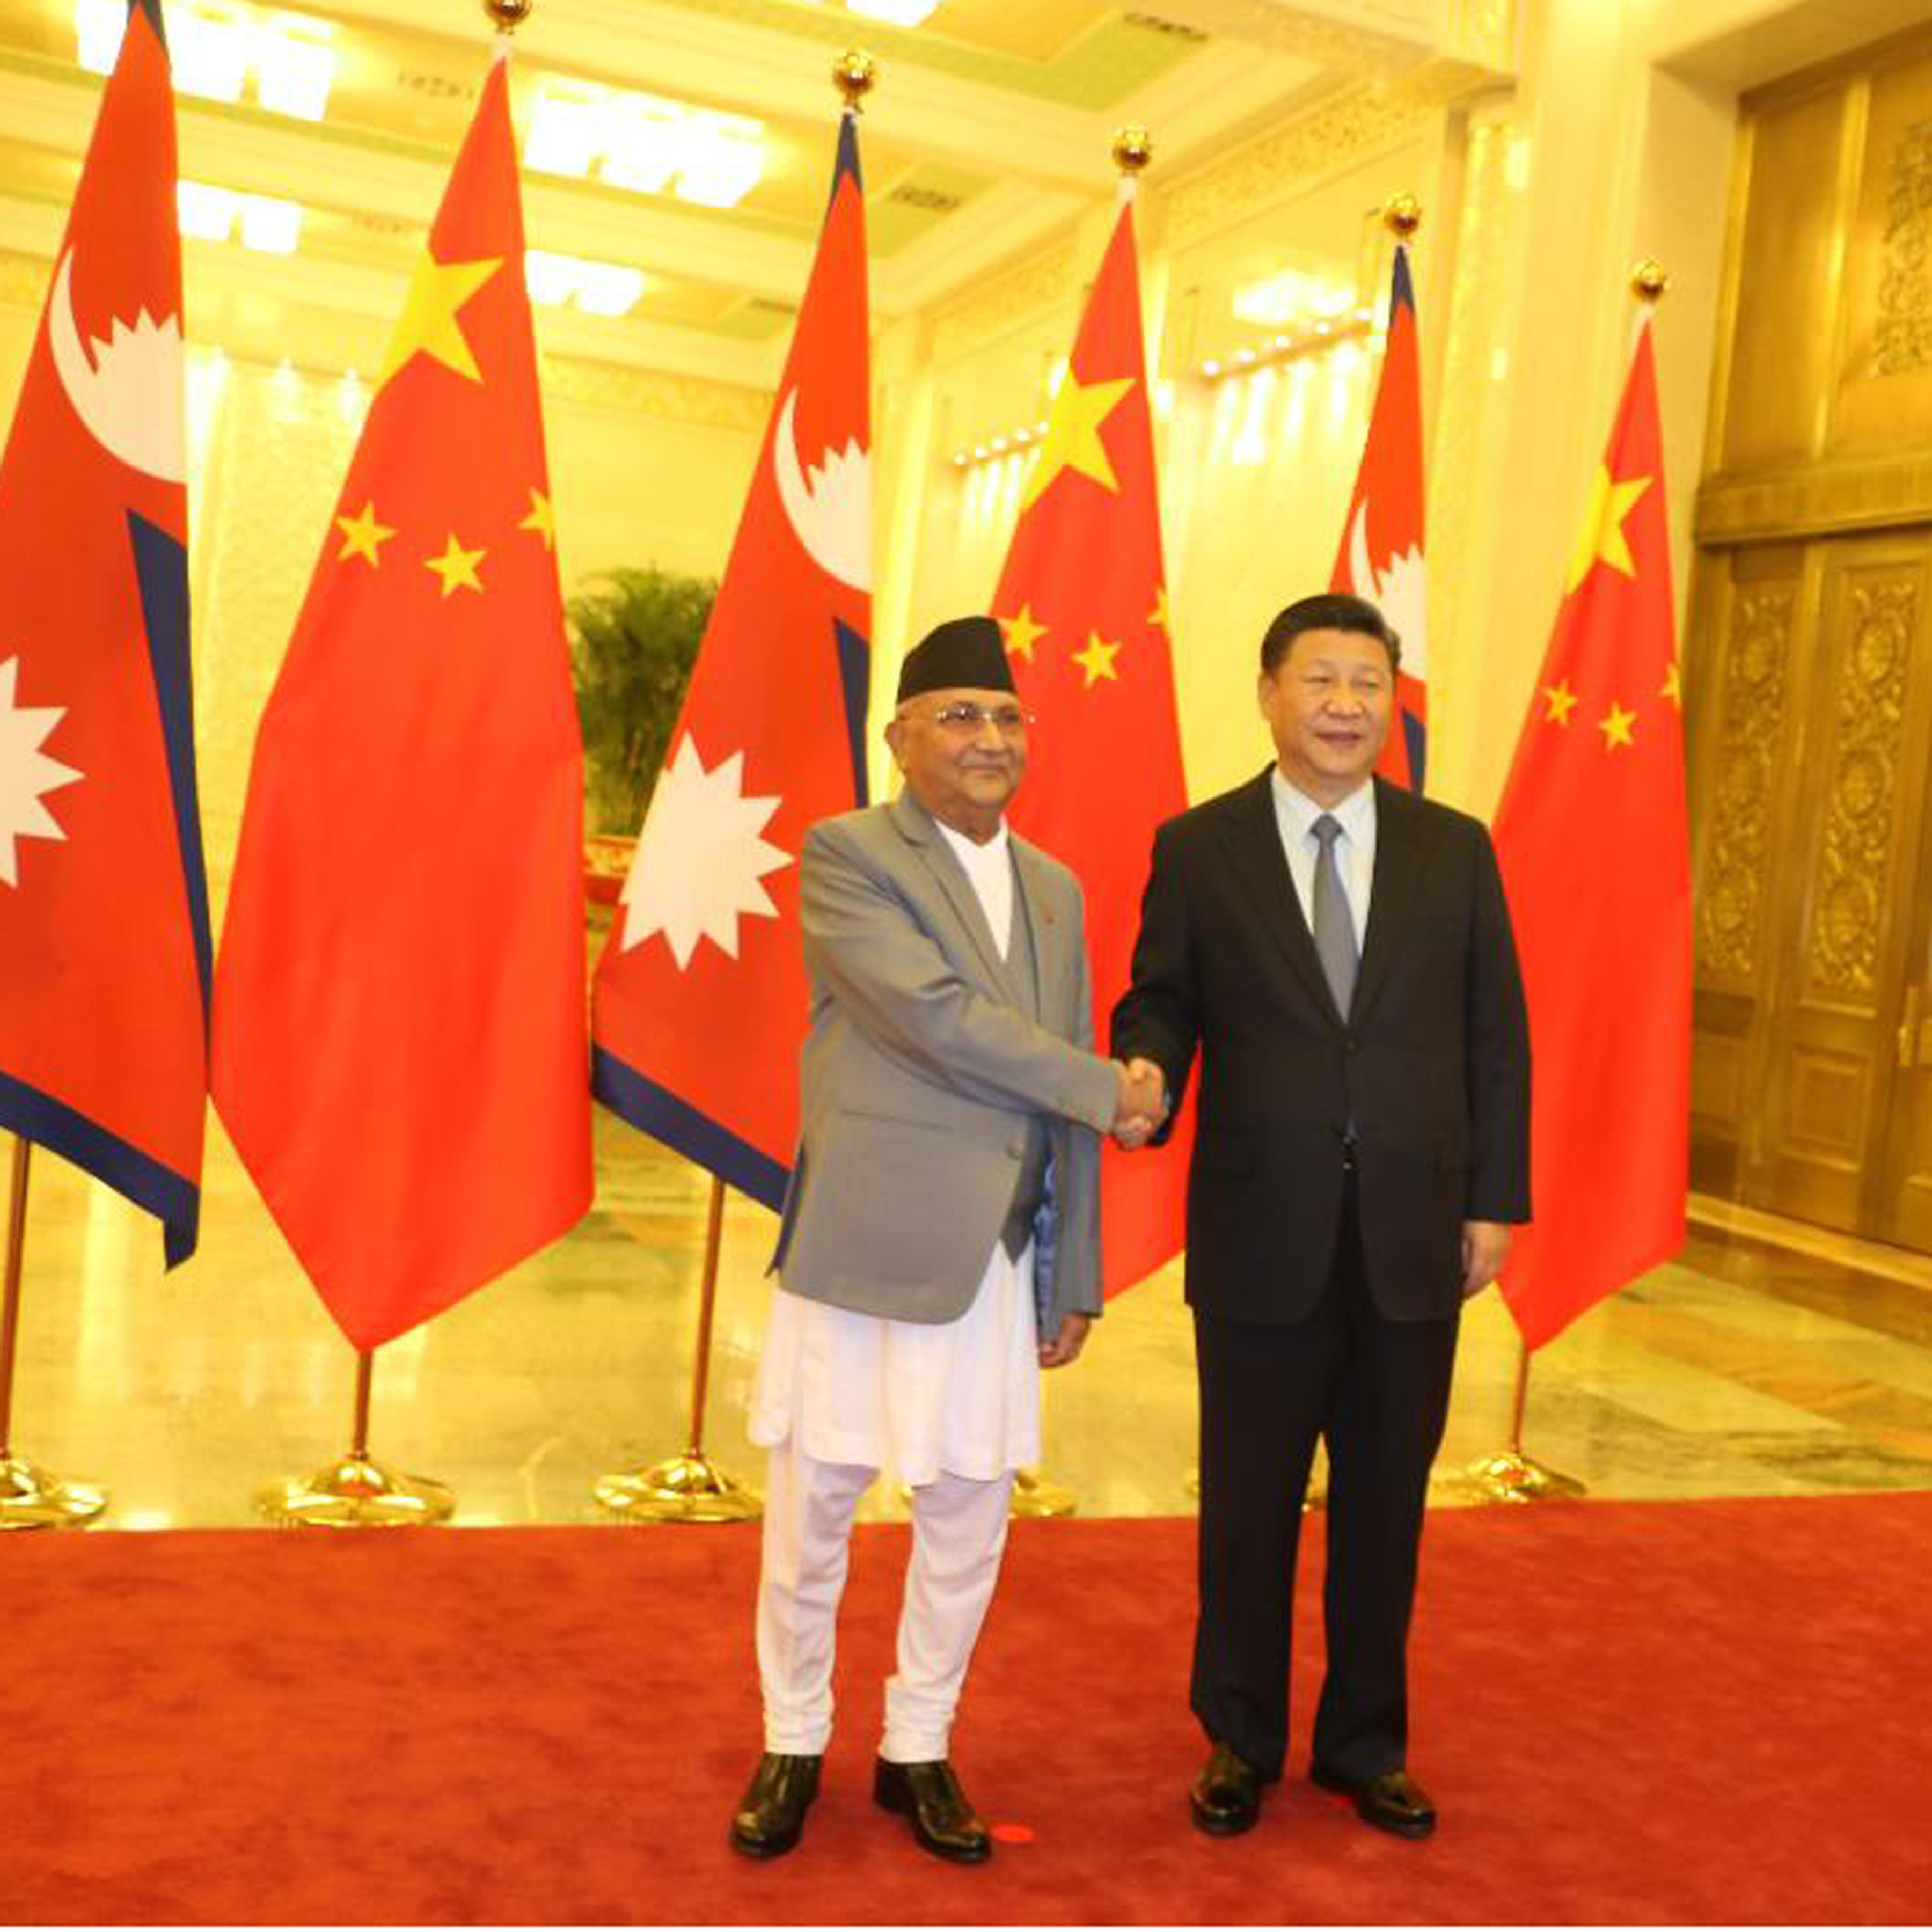 उपयुक्त समयमा नेपाल भ्रमण – चिनियाँ राष्ट्रपति